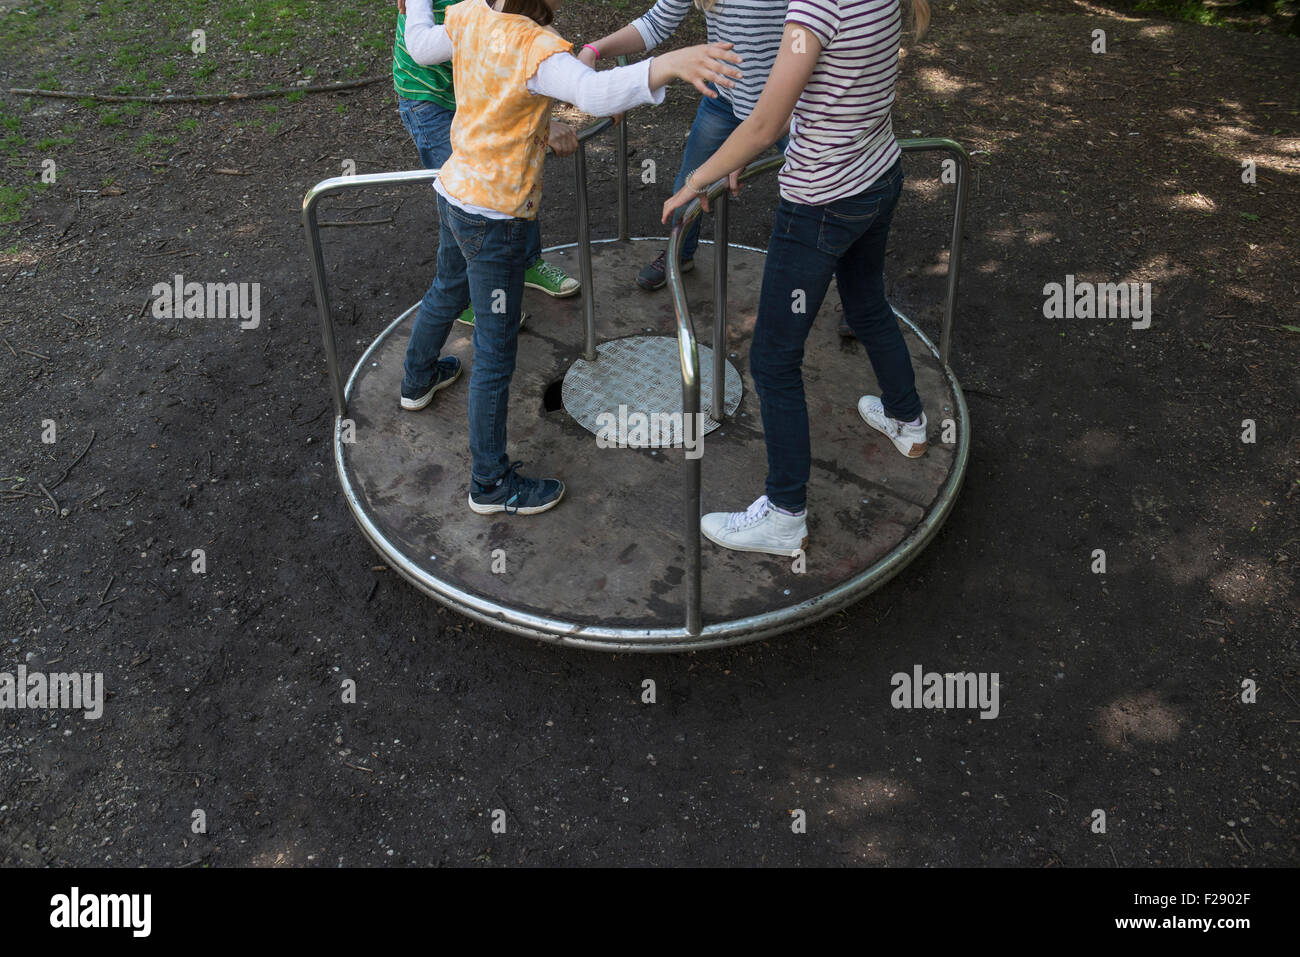 Les enfants s'amusant sur un carrousel en aire de jeux, Munich, Bavière, Allemagne Banque D'Images